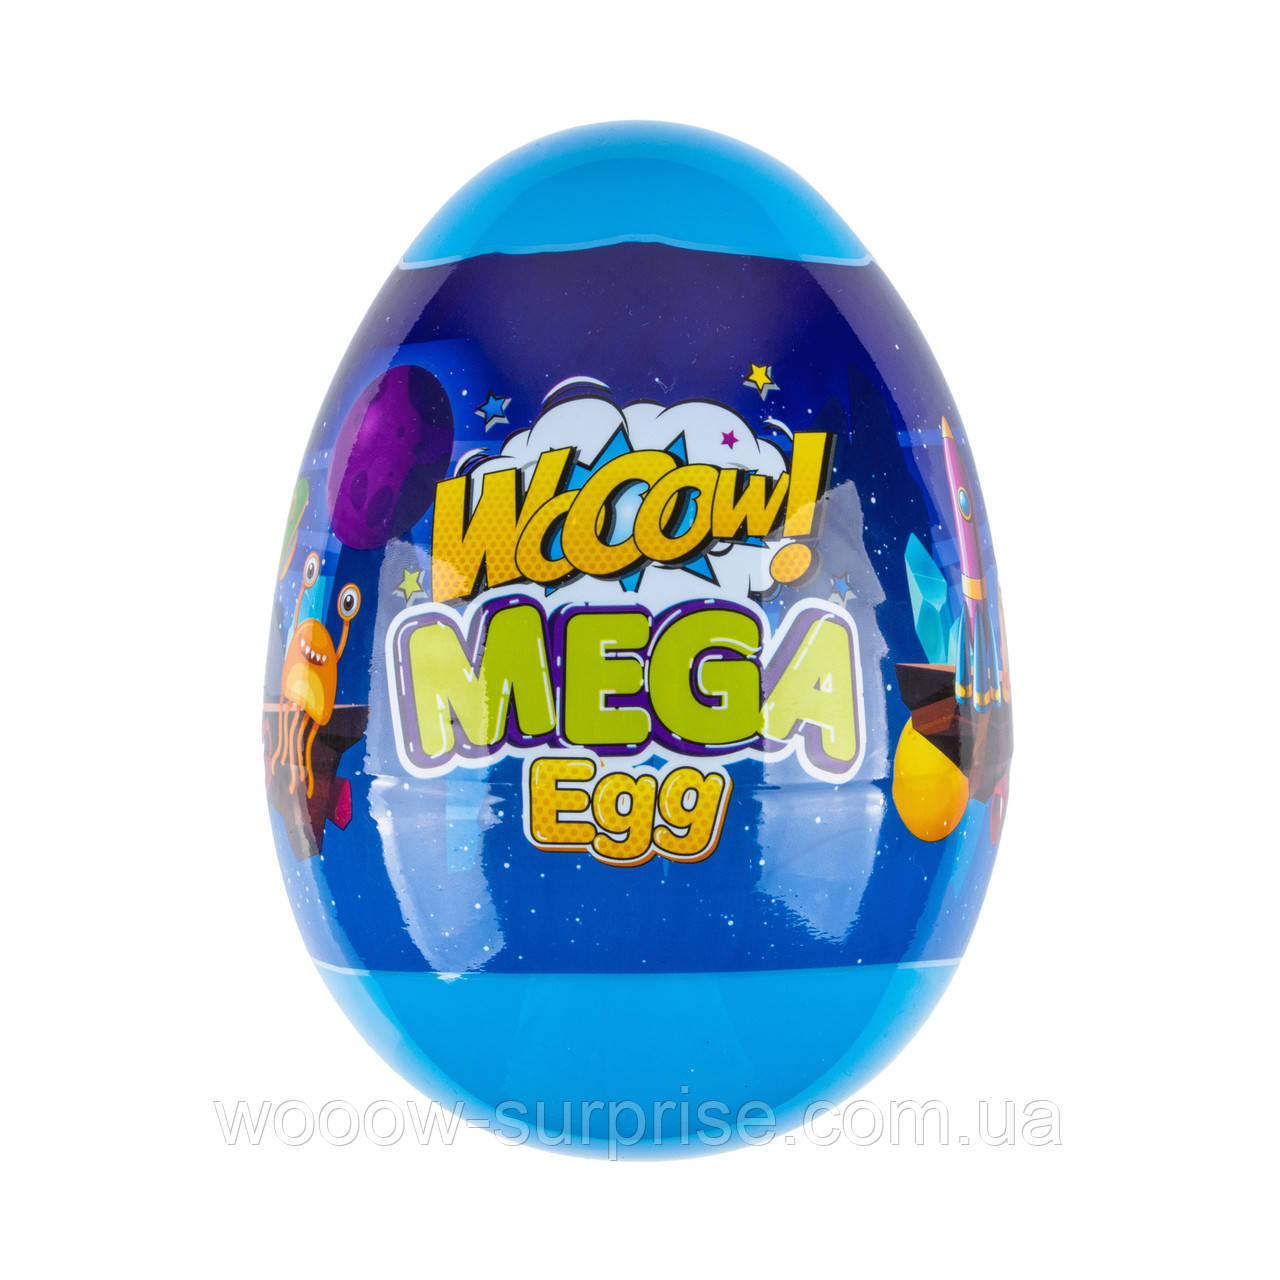 Яйце-сюрприз Mega egg, дитячий сейф-копілка